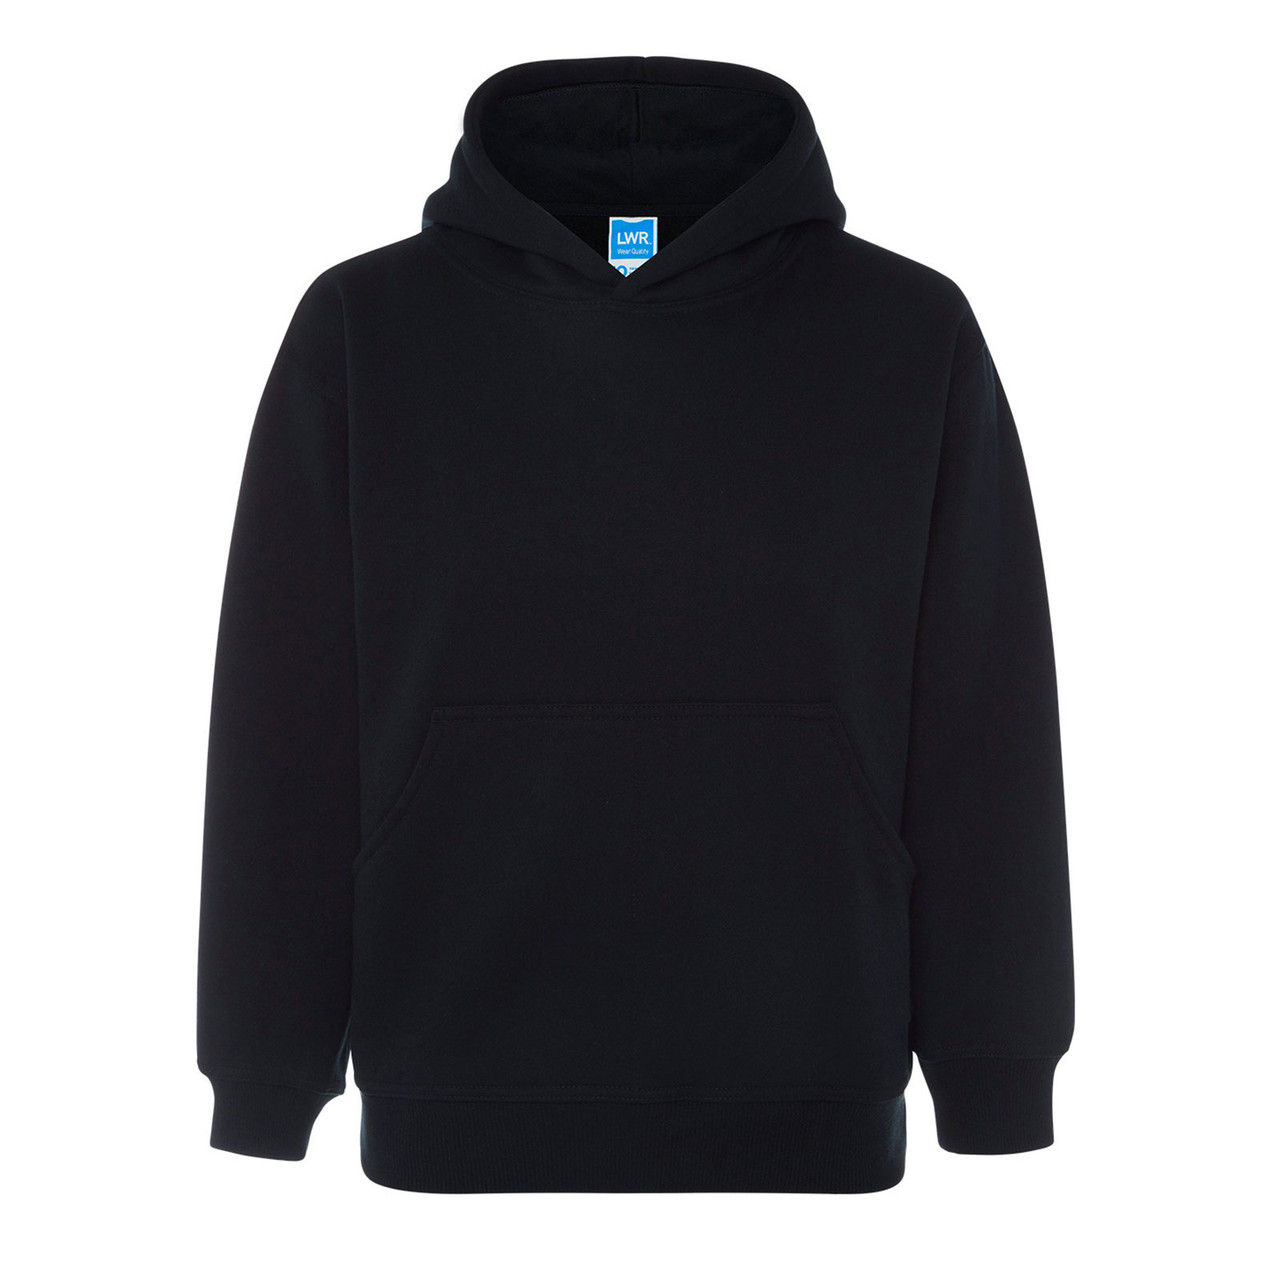 buy hoodies wholesale